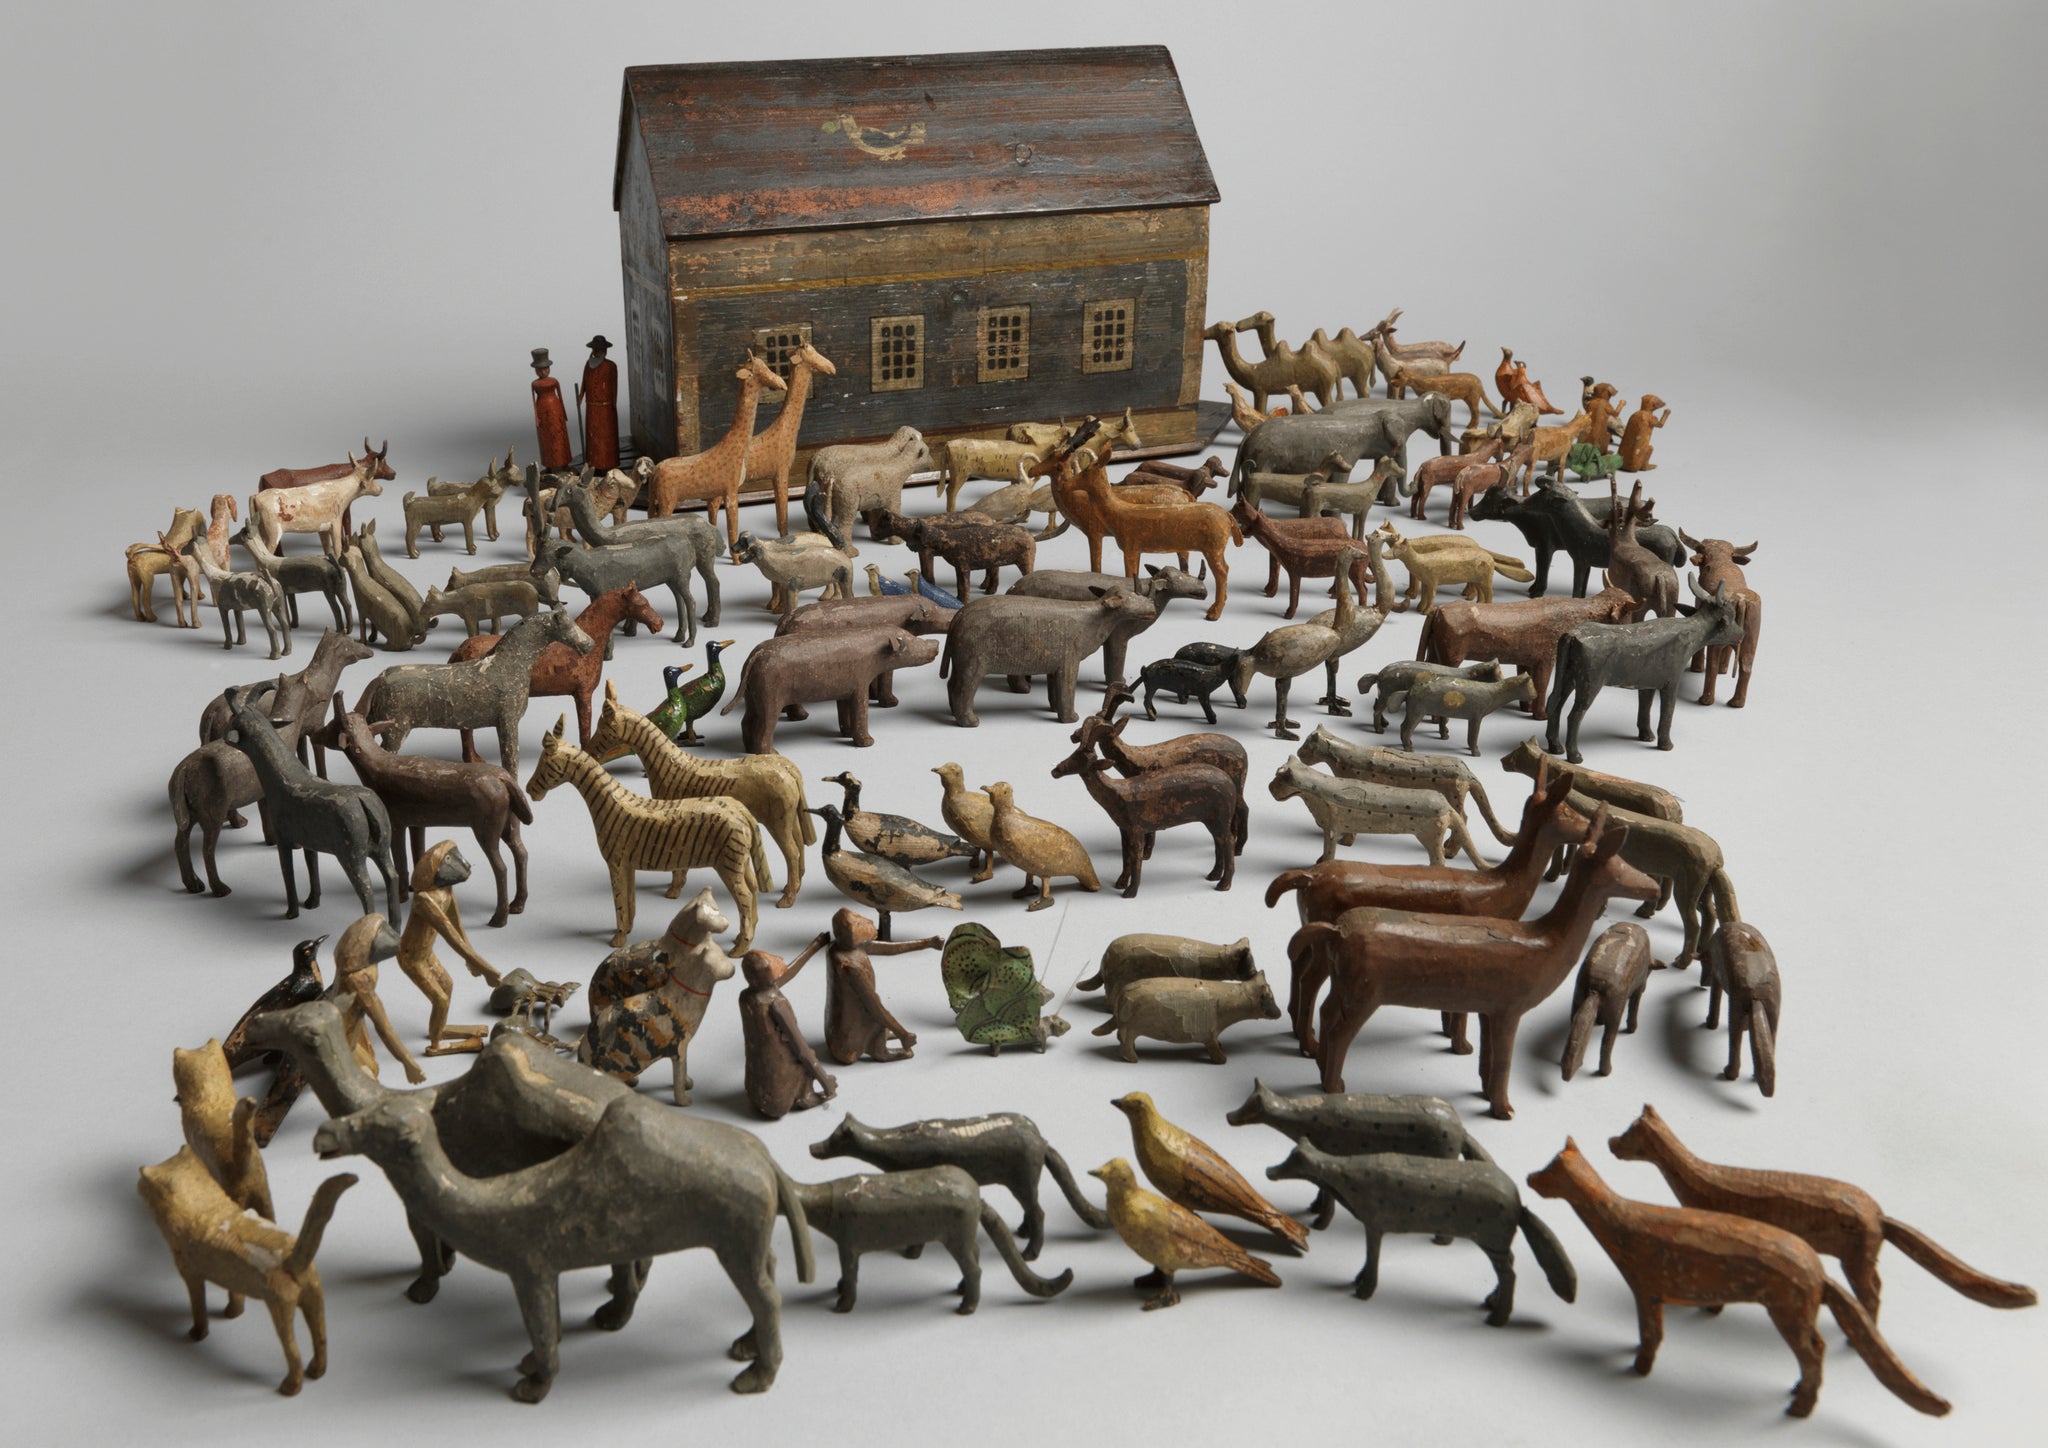 Original Antique Toy Noah's Ark and Animals